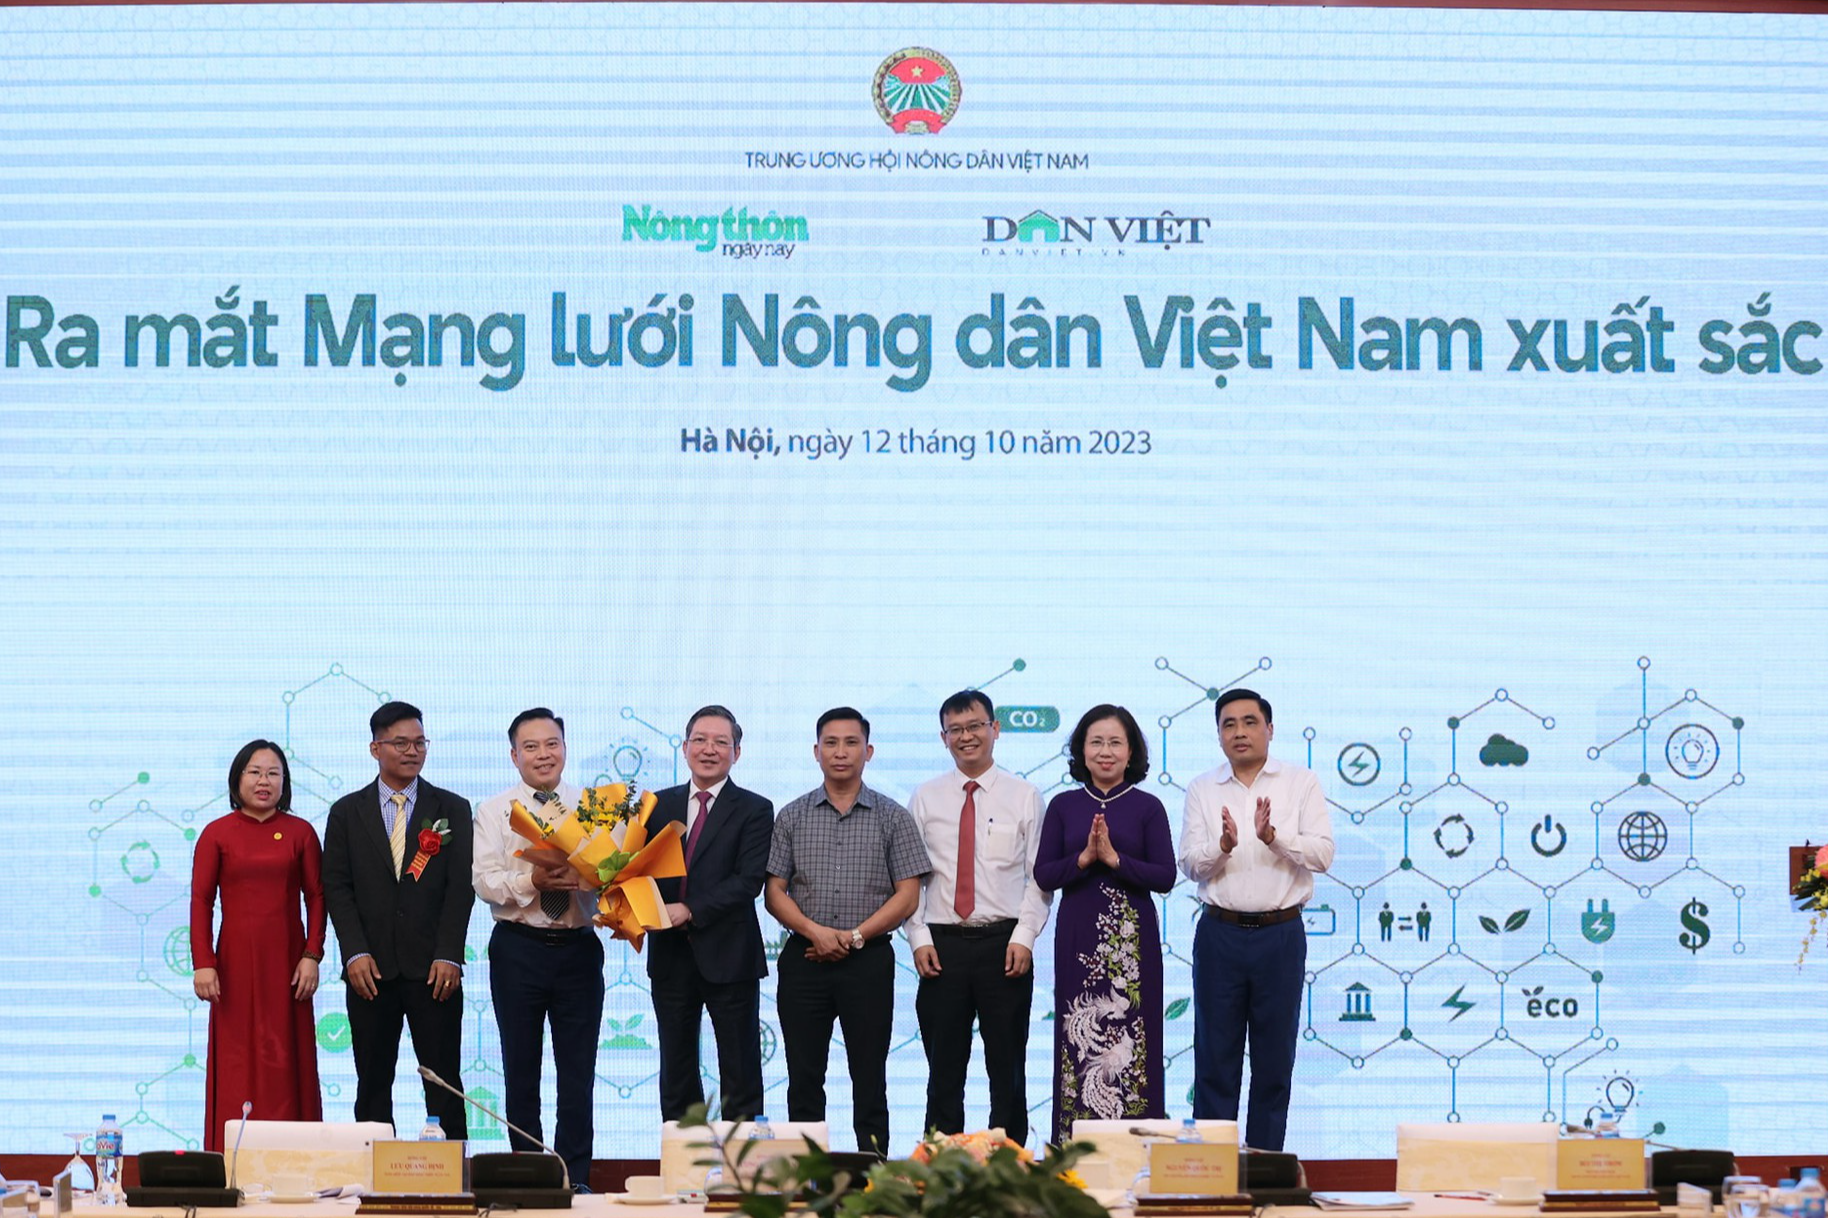 Ra mắt &quot;Mạng lưới Nông dân Việt Nam xuất sắc&quot;: Tạo cảm hứng cho nông dân Việt cùng vươn lên làm giàu - Ảnh 1.